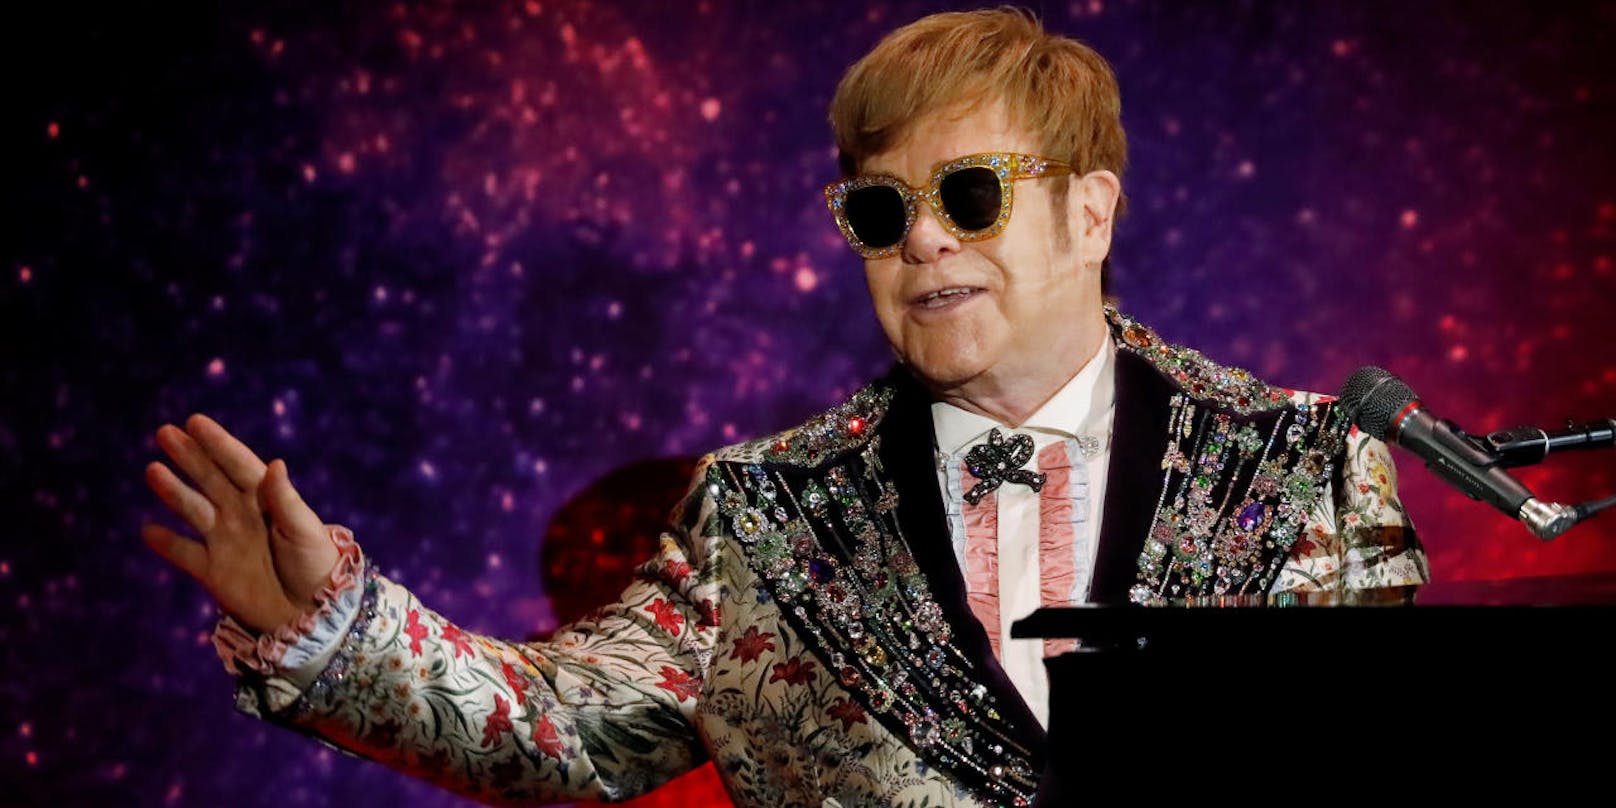 Böser Elton John! Er war auf Capri ohne Mundschutz unterwegs